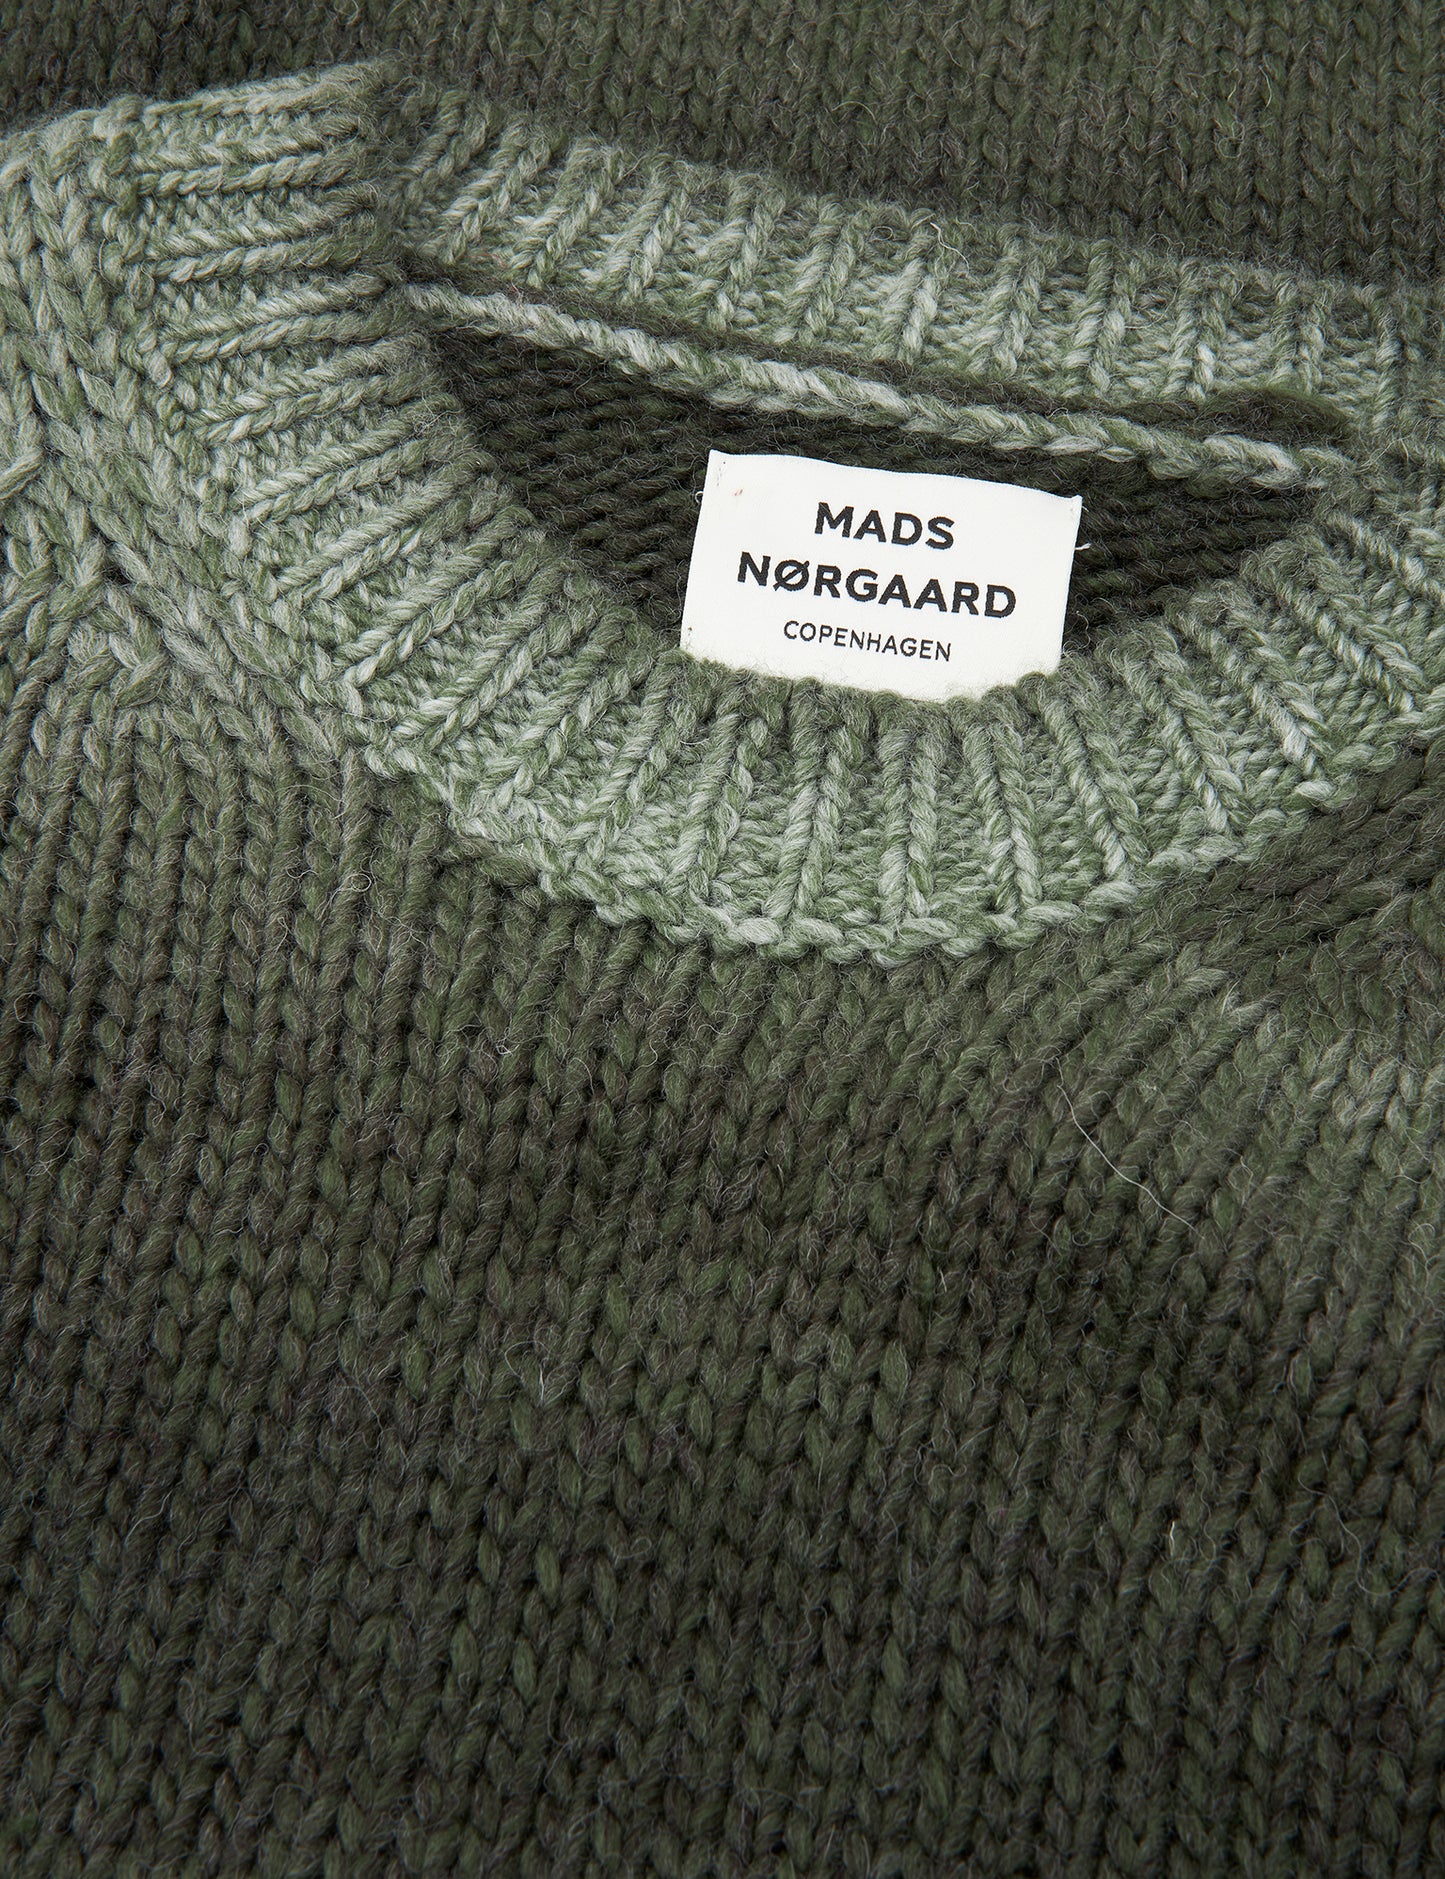 Shaded Lefty Sweater, Forest Night Melange